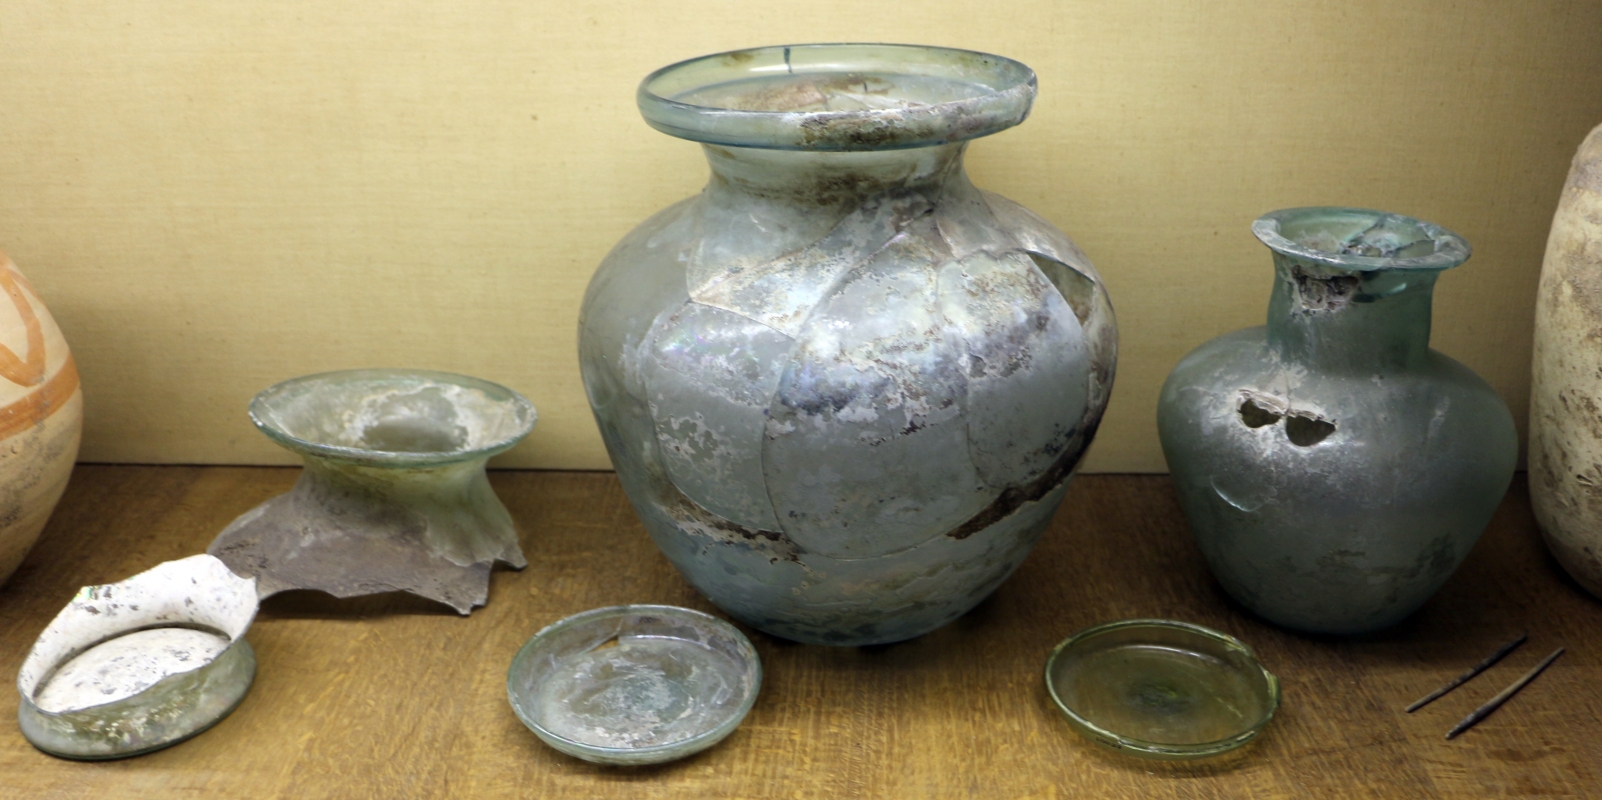 Materiali da necropoli di s. martino in gattara, tomba 10, vasi in vetro - Sailko